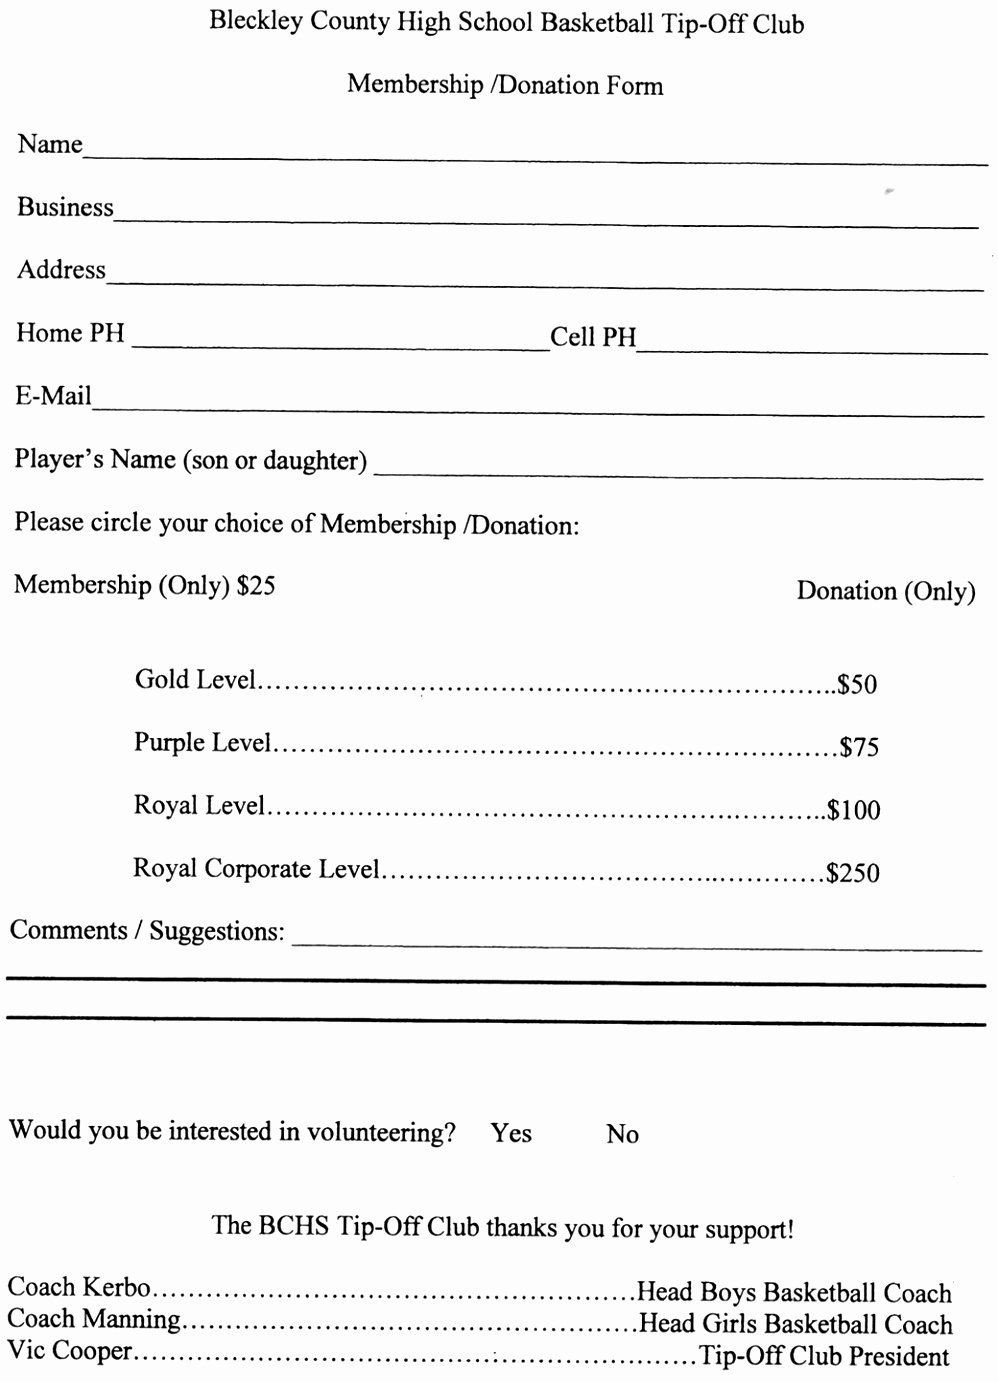 Sample Resume Church Membership form Template Sample Church Membership form Template New 9 Church Member